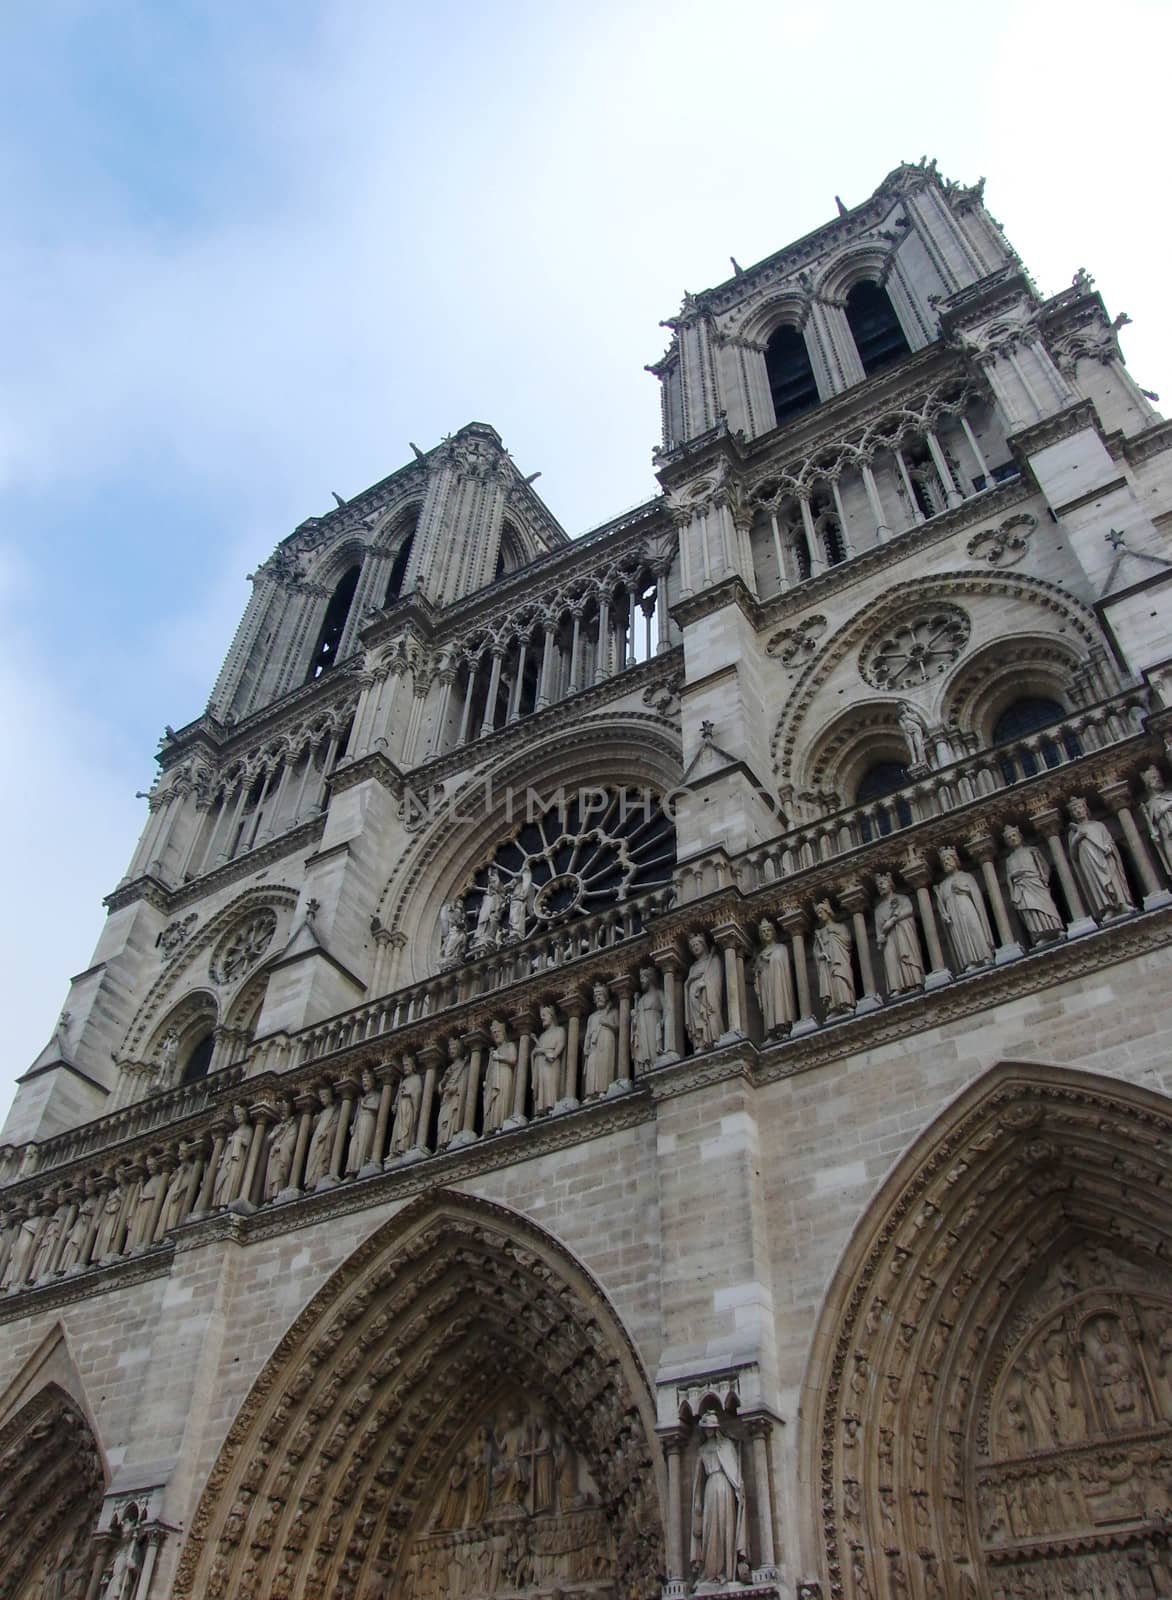 Picture of the Main Entrance of Cathédrale Notre Dame de Paris.